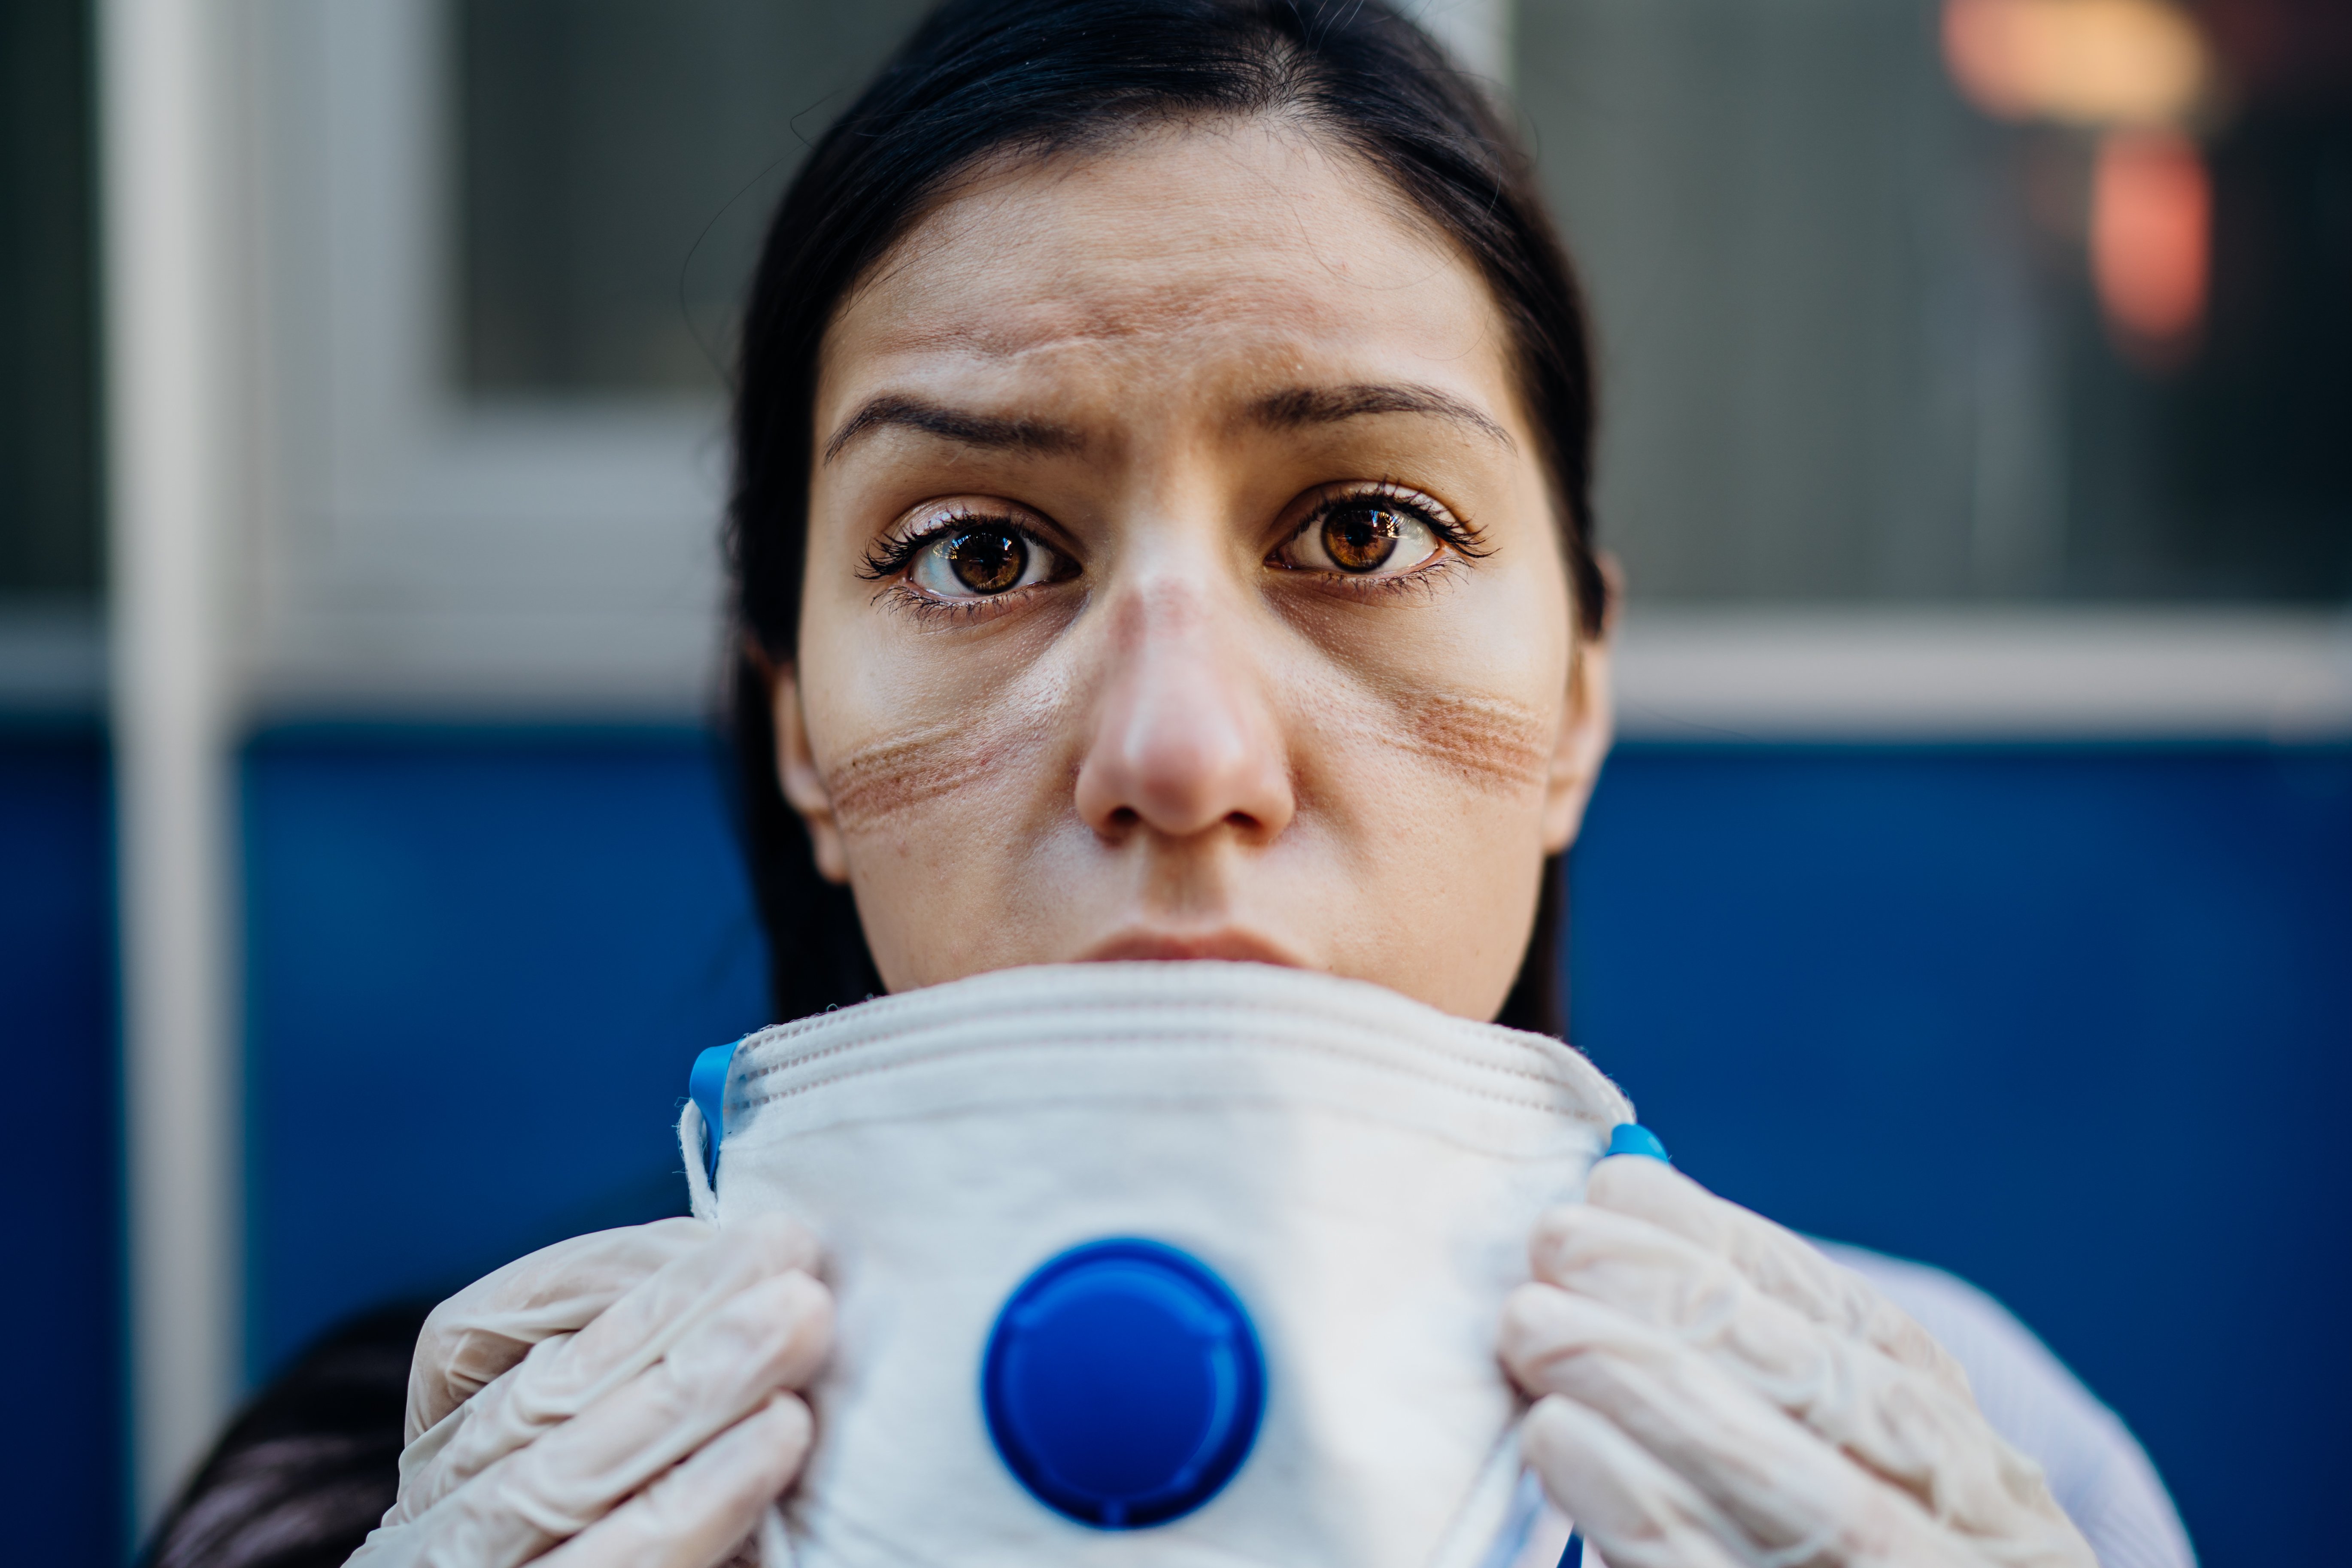 Enfermera exhausta tomando el equipo protector de coronavirus.│ Foto: Shutterstock